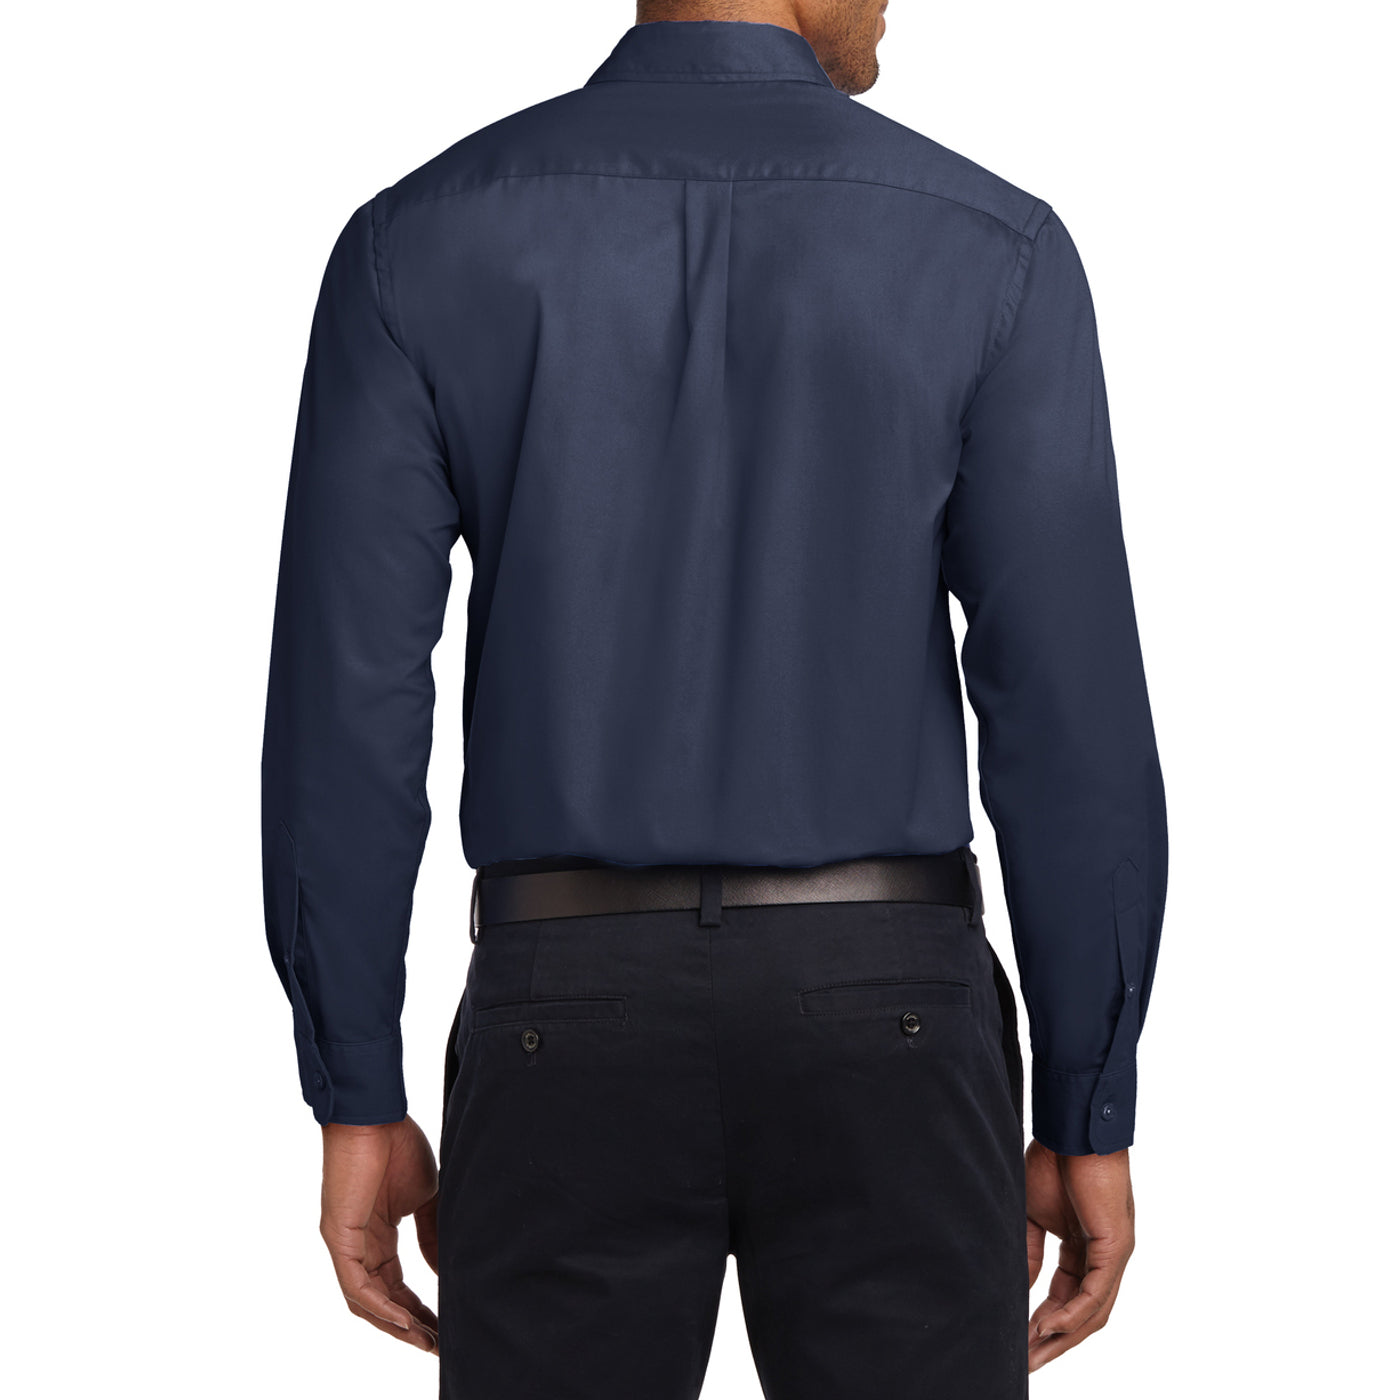 Men's Long Sleeve Easy Care Shirt - Navy/ Light Stone - Back